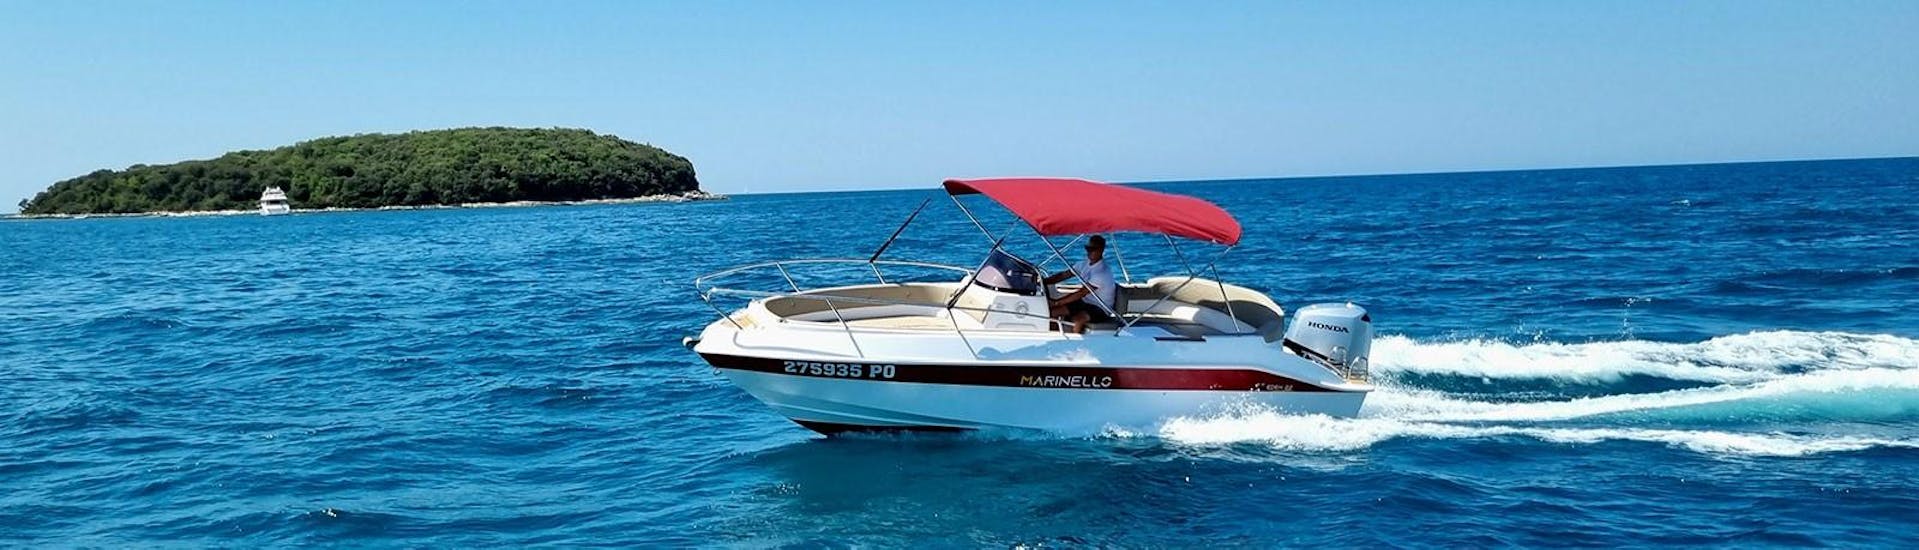 Un bel motoscafo con bimini nero di Funtana Charter, il noleggio barche a Fontane vicino a Parenzo.